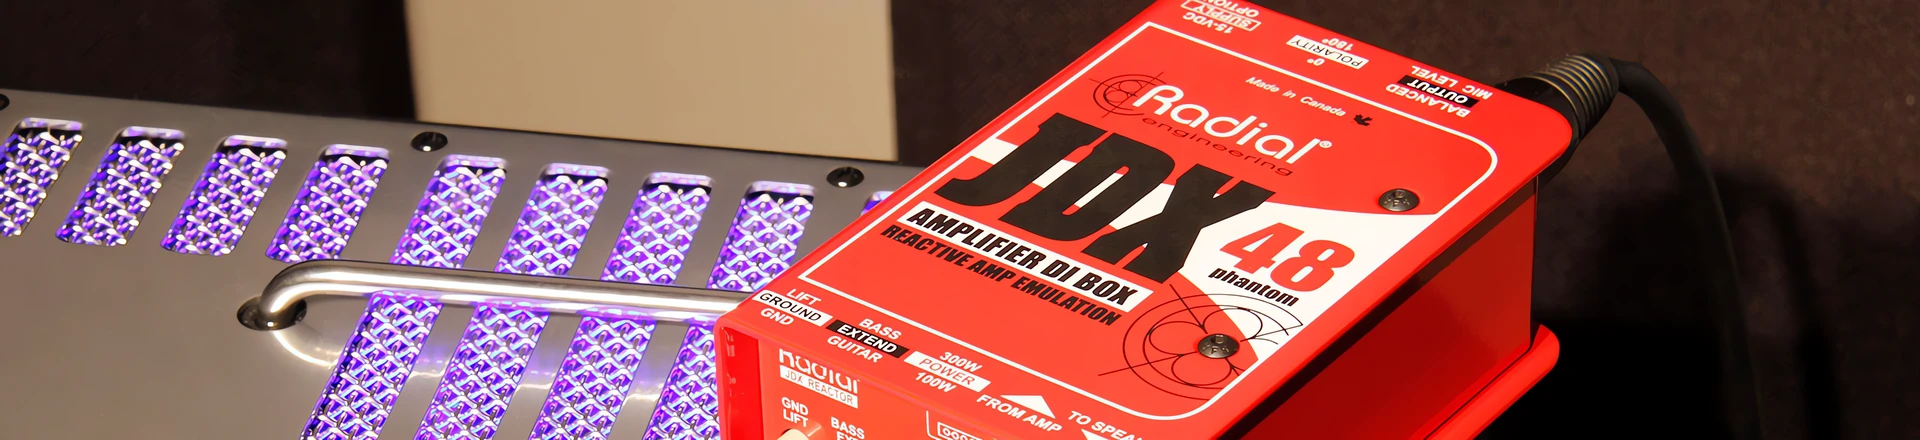 Promocja na diboxy Radial w Lauda Audio do końca czerwca!